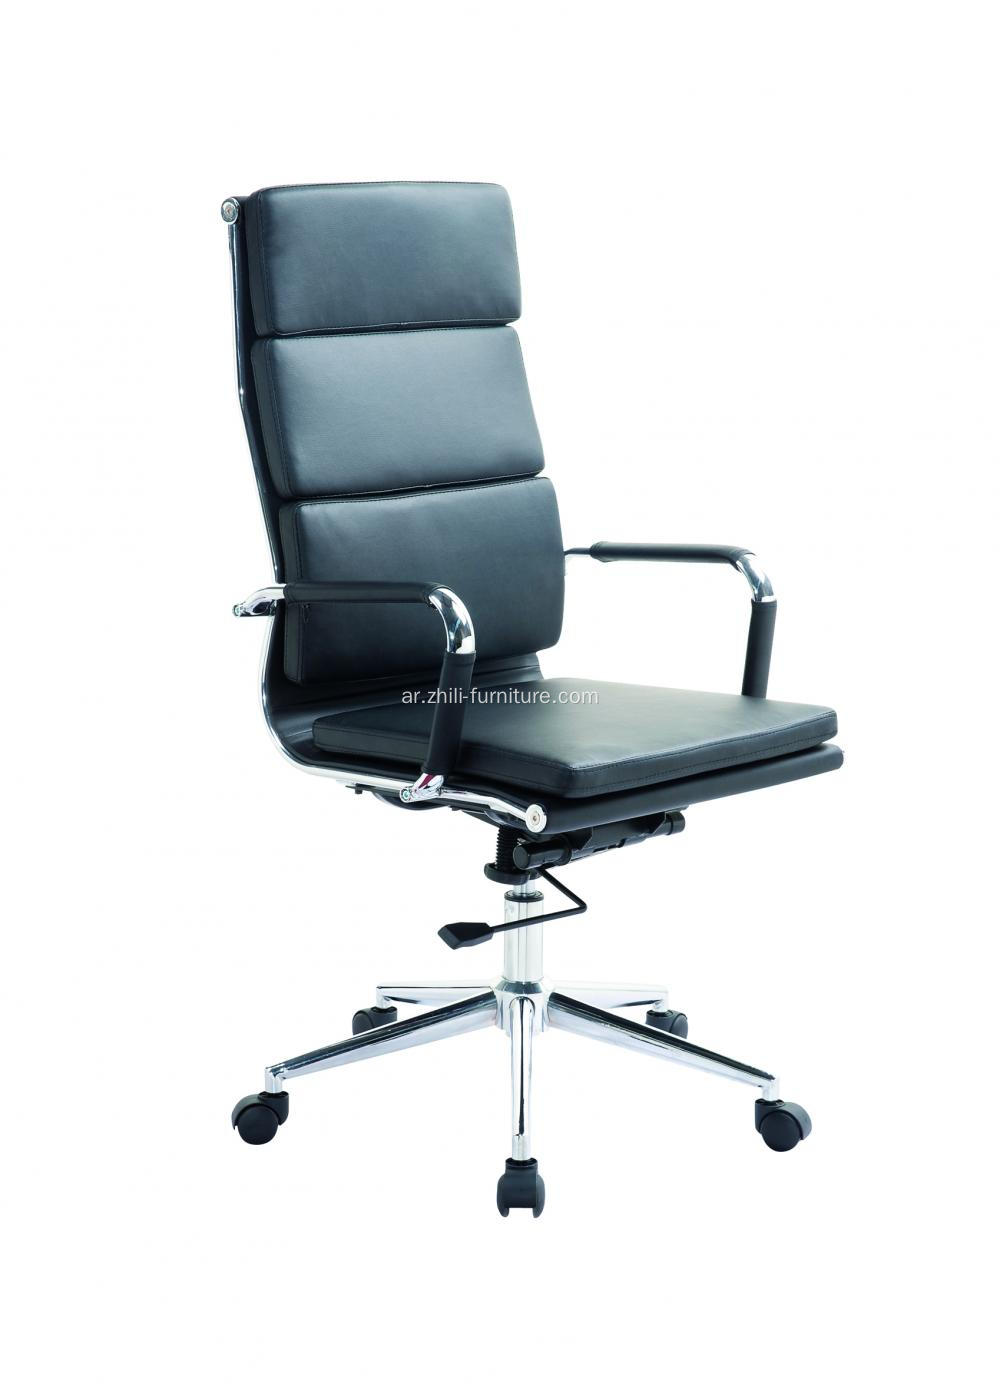 ارتفاع كرسي المكتب التنفيذي مع مقعد Ticken